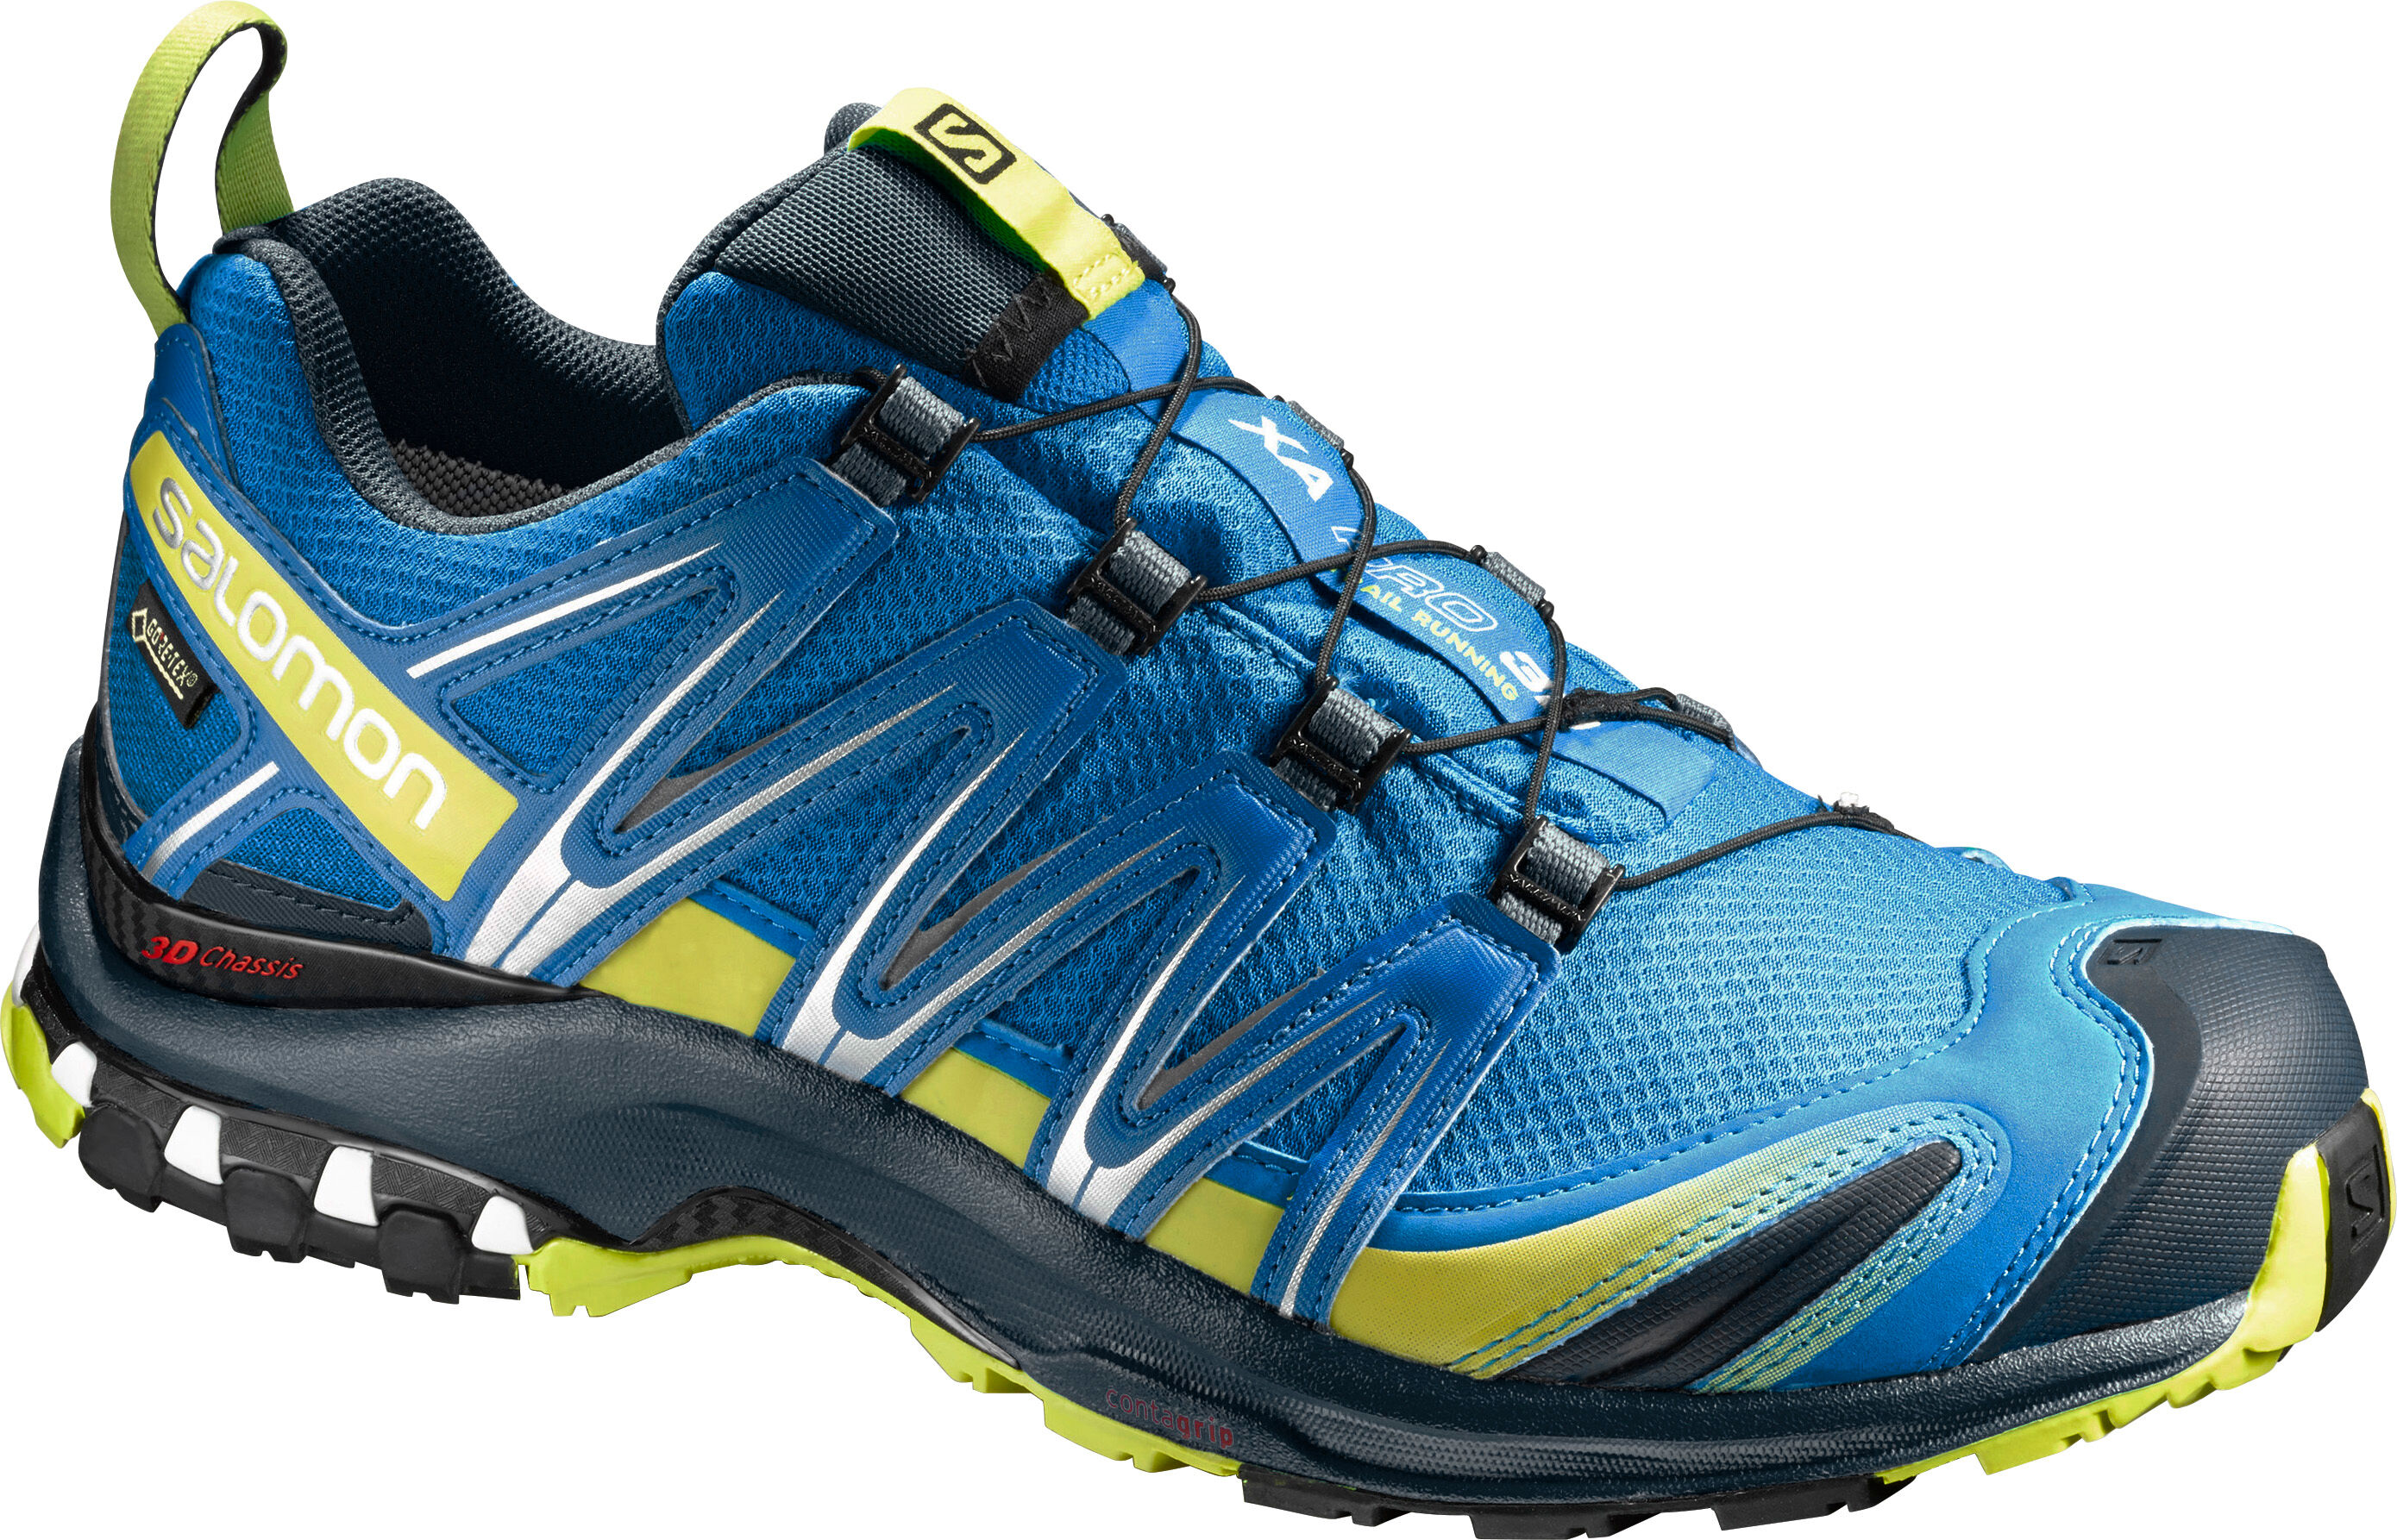 Salomon - XA Pro 3D GTX® - Zapatillas de trekking - Hombre